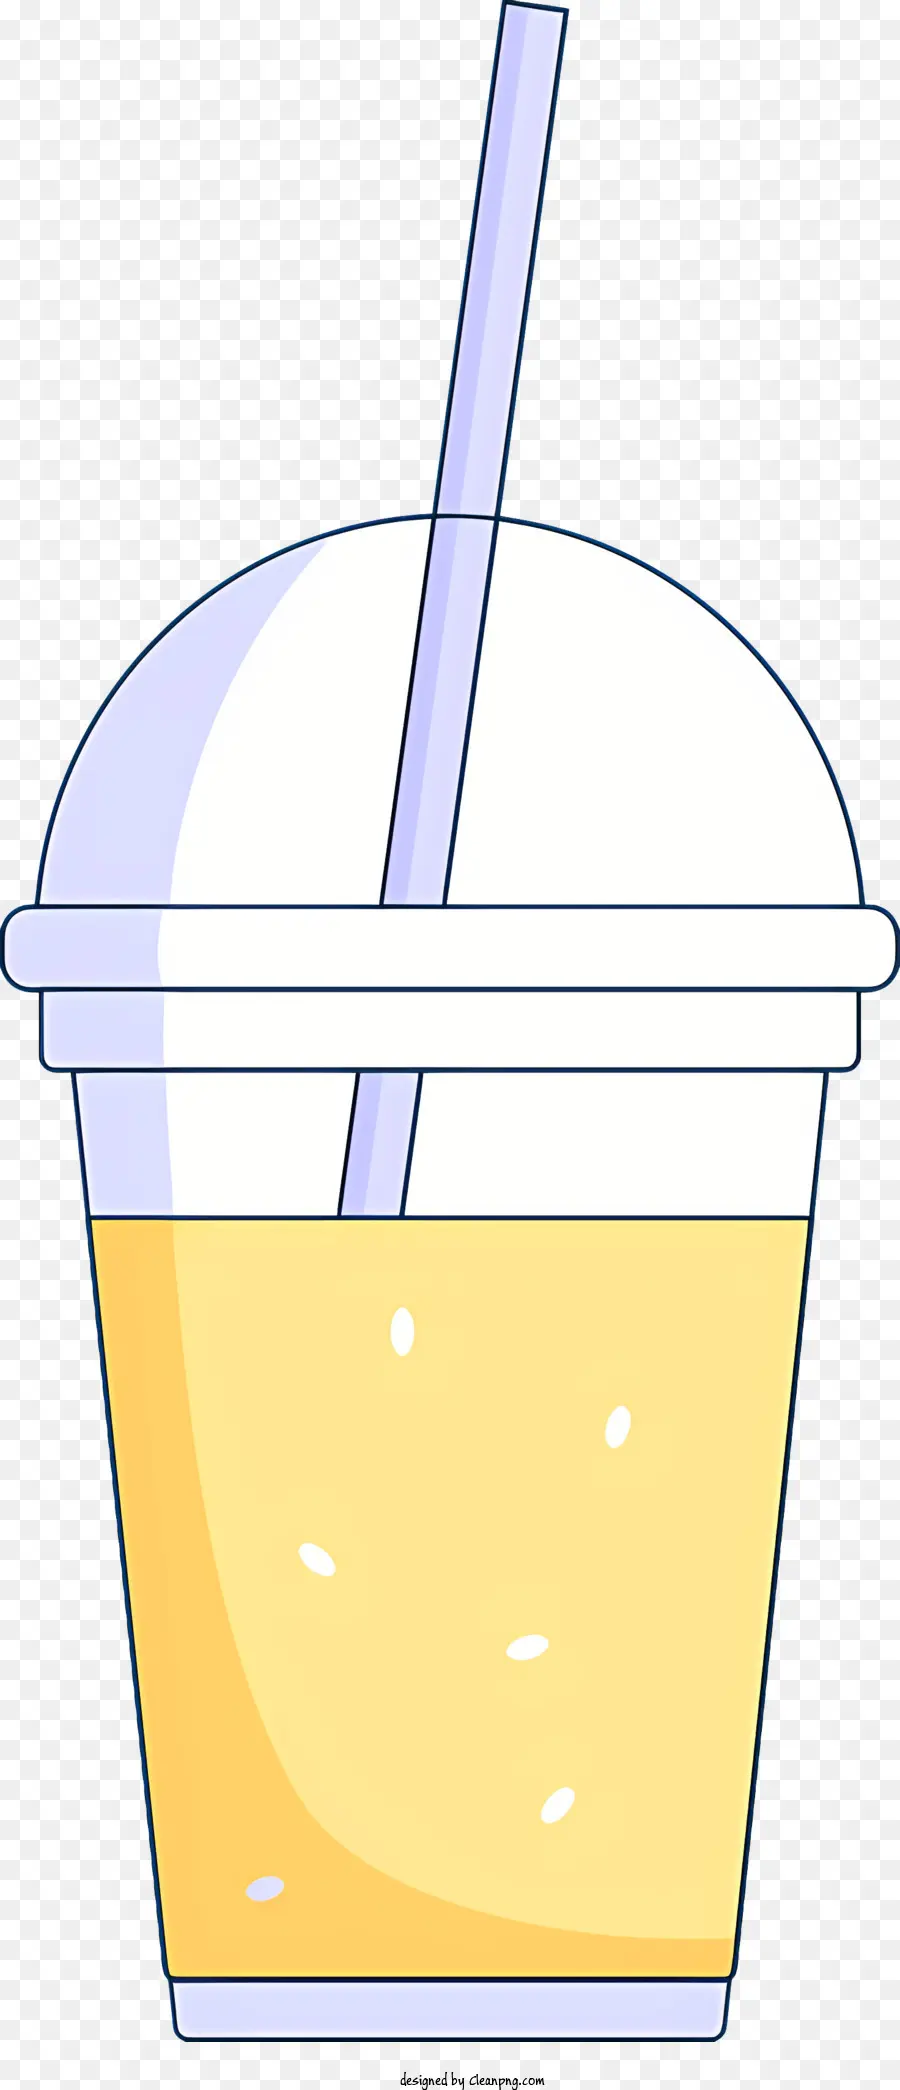 Cuppa di plastica a bolle di plastica in plastica paglia bianca in una tazza - Tazza trasparente con paglia bianca e acqua